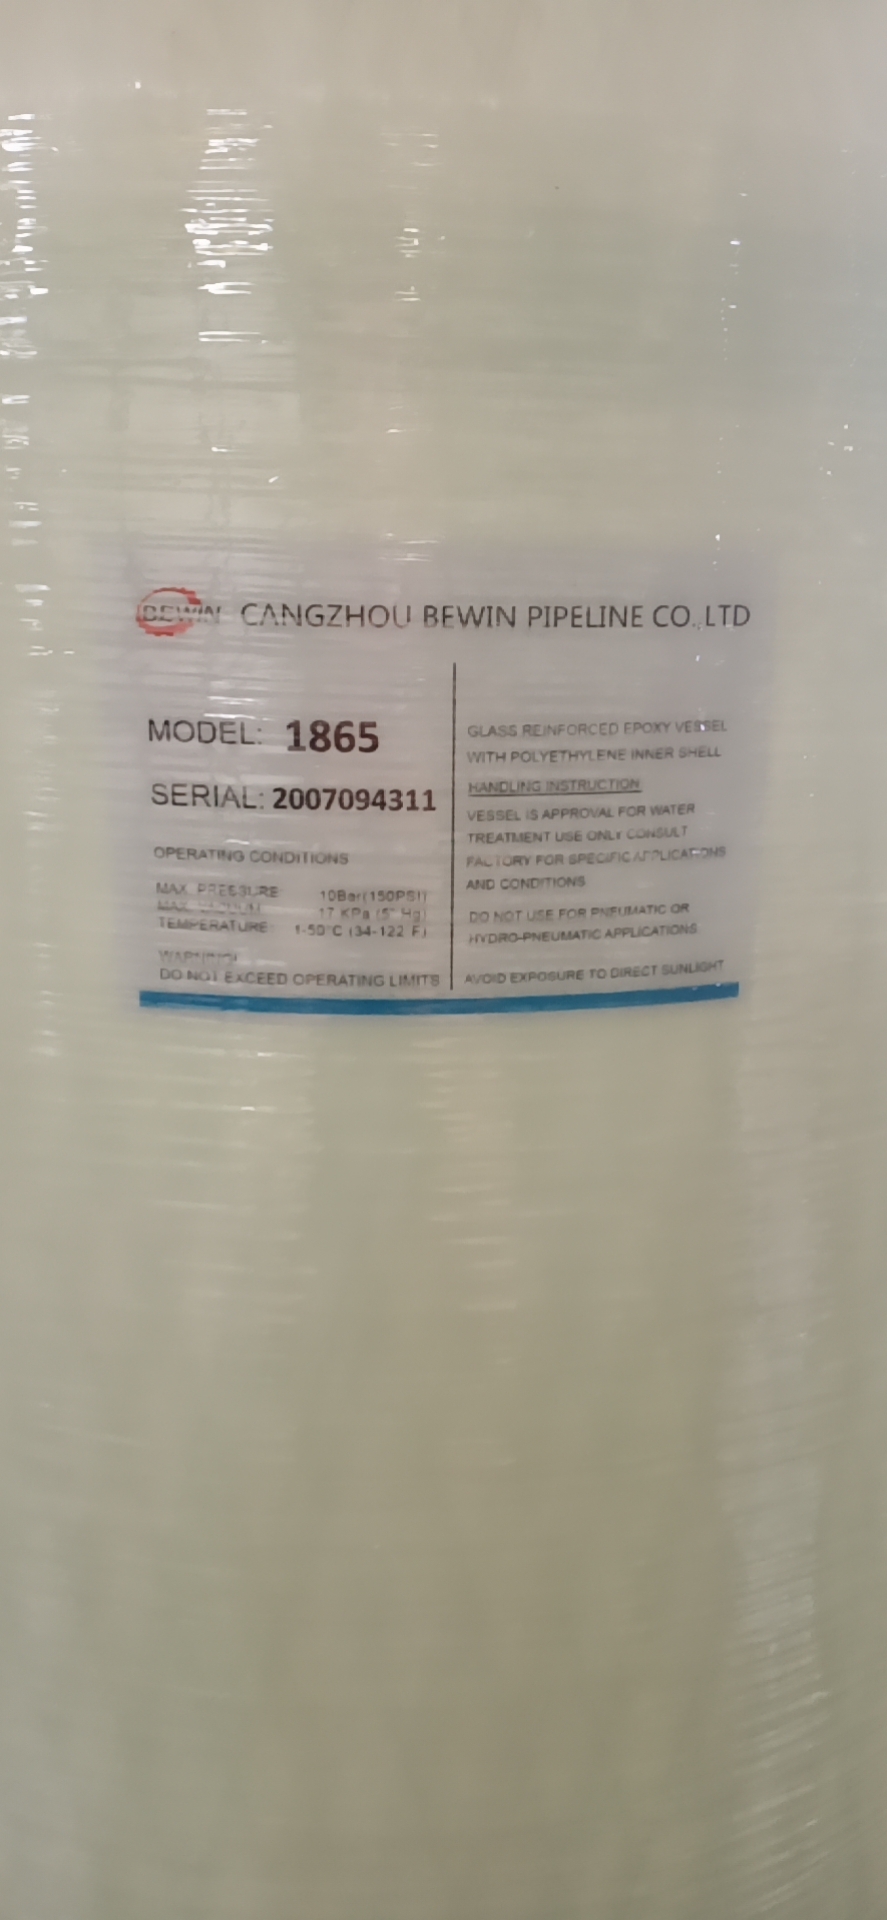 FRP Plastic fiberglass Pressure Resin softener Tank for Waste Water filter Treatment Equipment